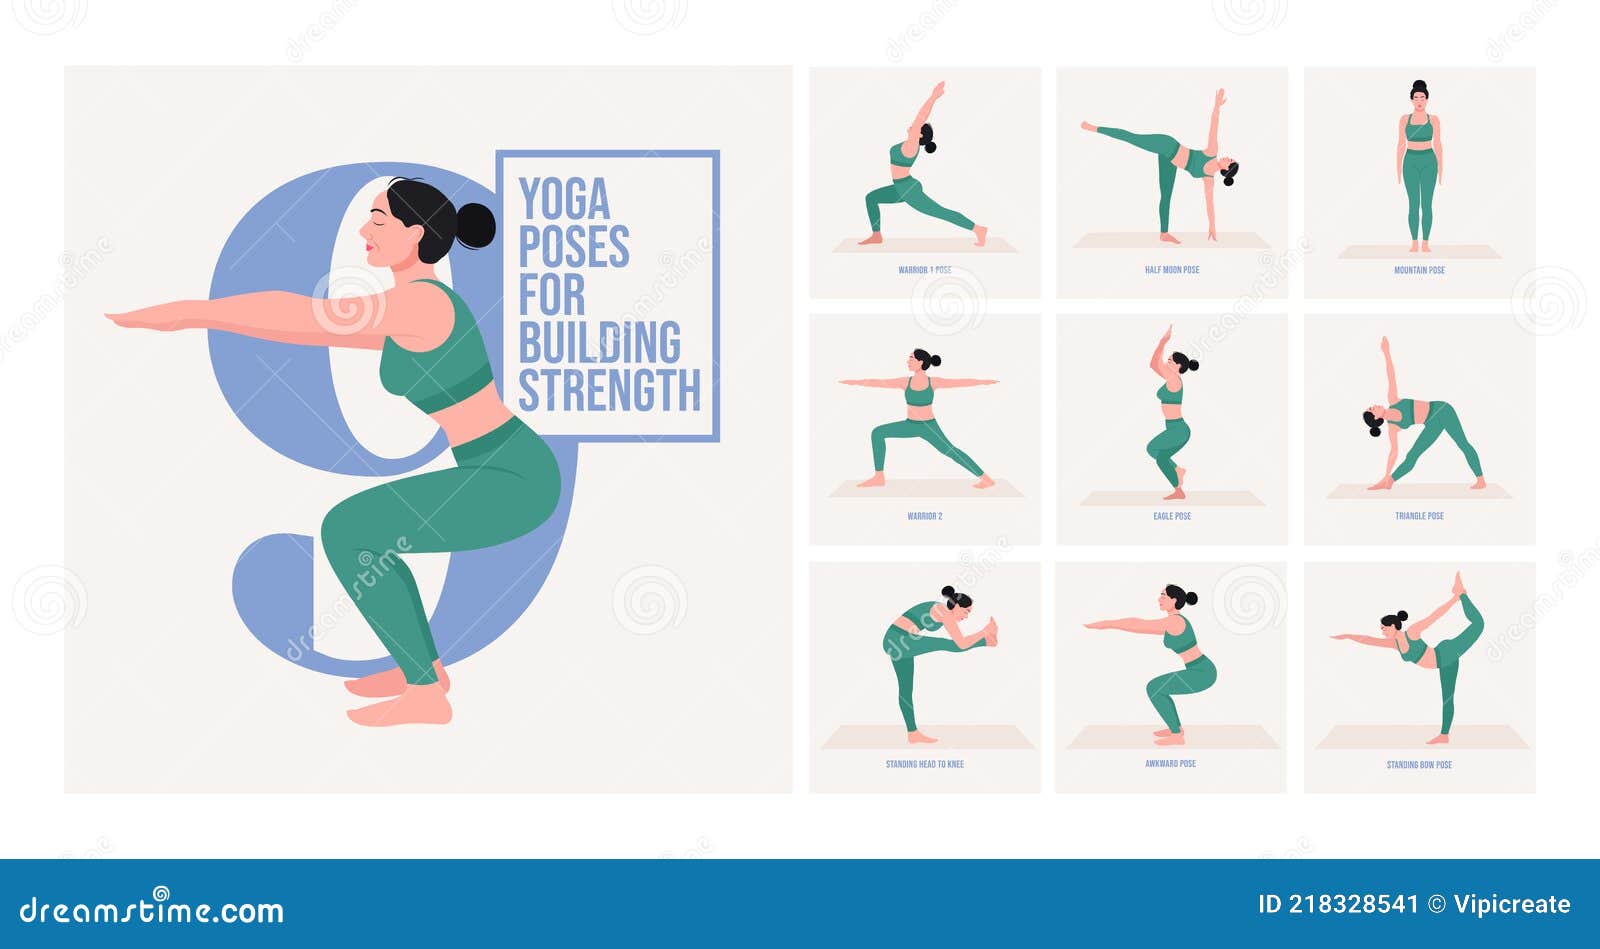 8 foundational yoga poses for beginners - Ekhart Yoga